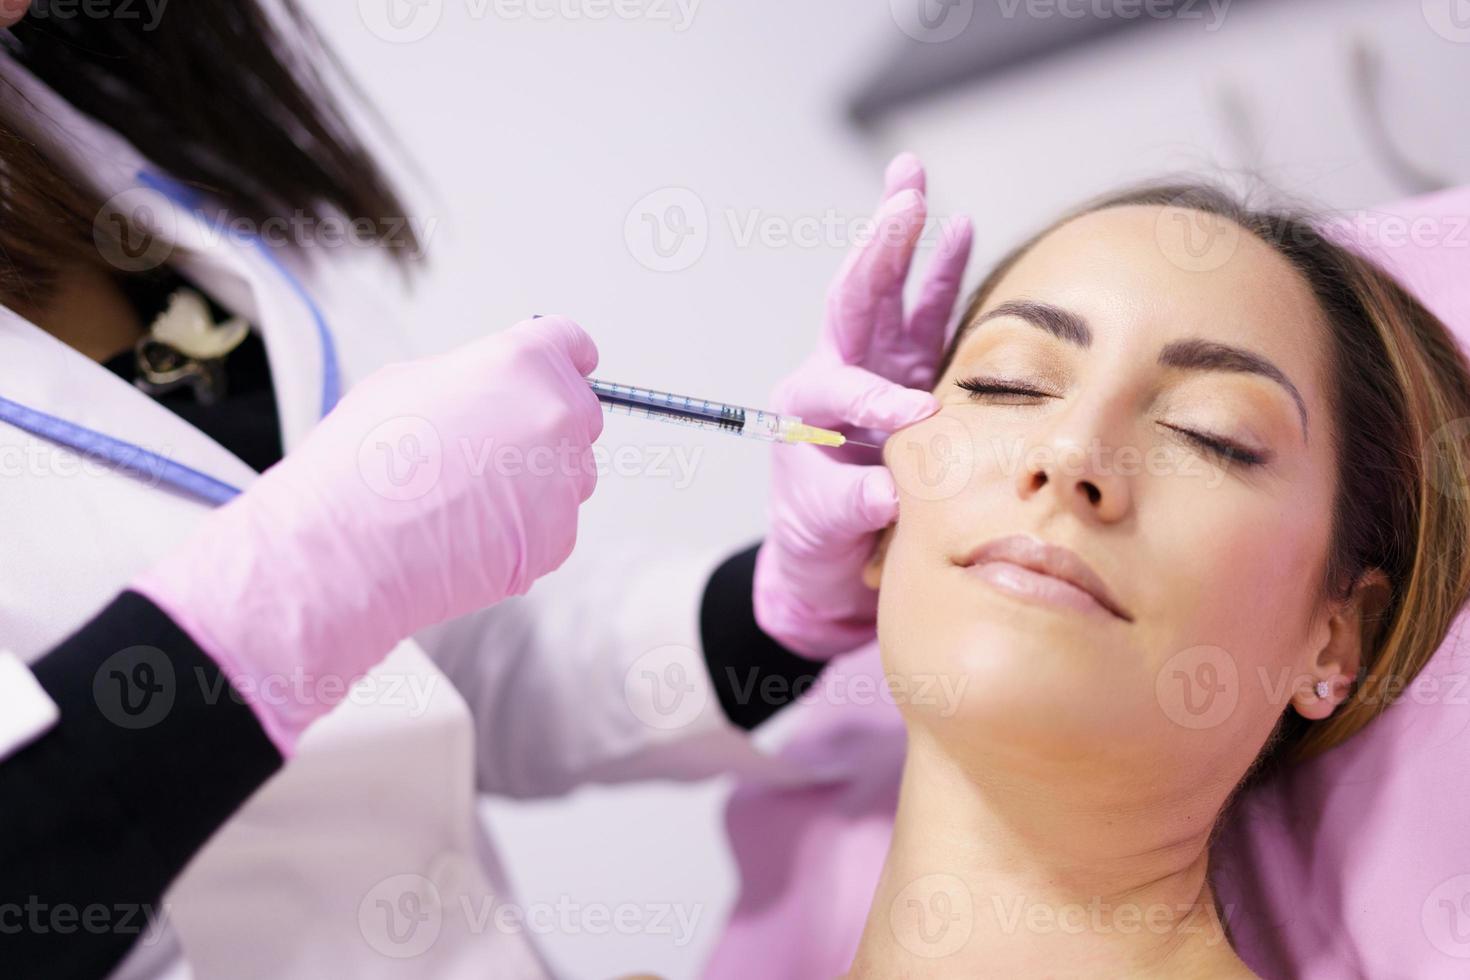 Arzt injiziert Hyaluronsäure in die Wangenknochen einer Frau als Gesichtsverjüngungsbehandlung. foto